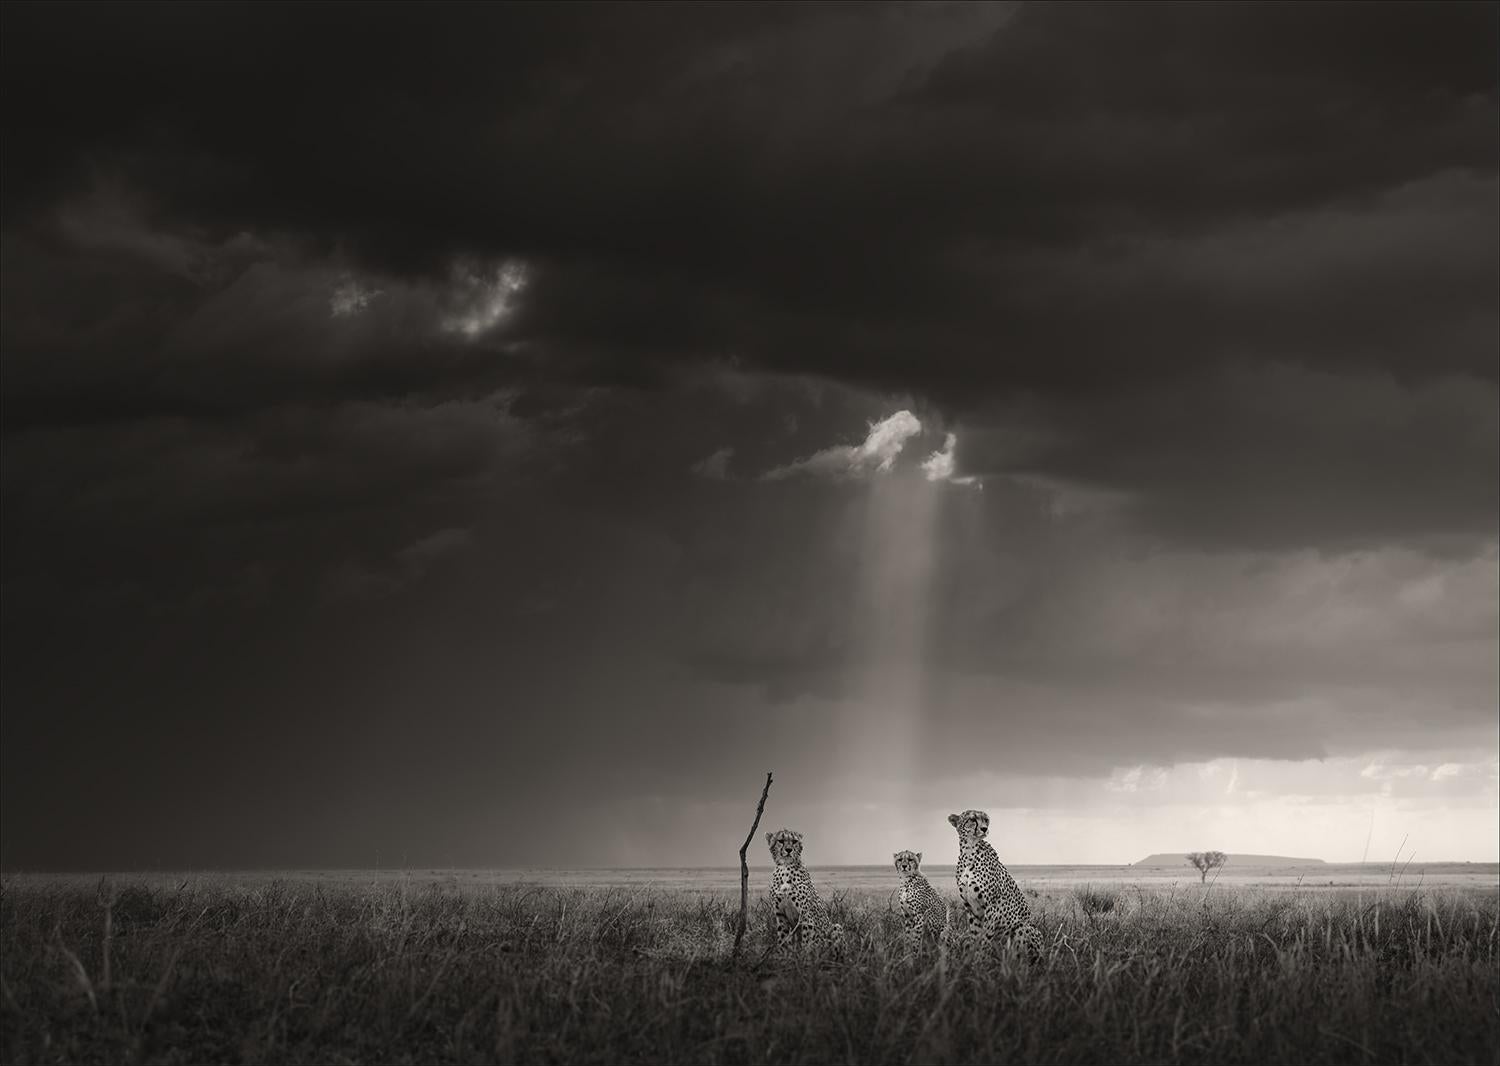 Landscape Photograph Joachim Schmeisser - Le ciel envoyé, noir et blanc, animal, Afrique, photographie, guépard